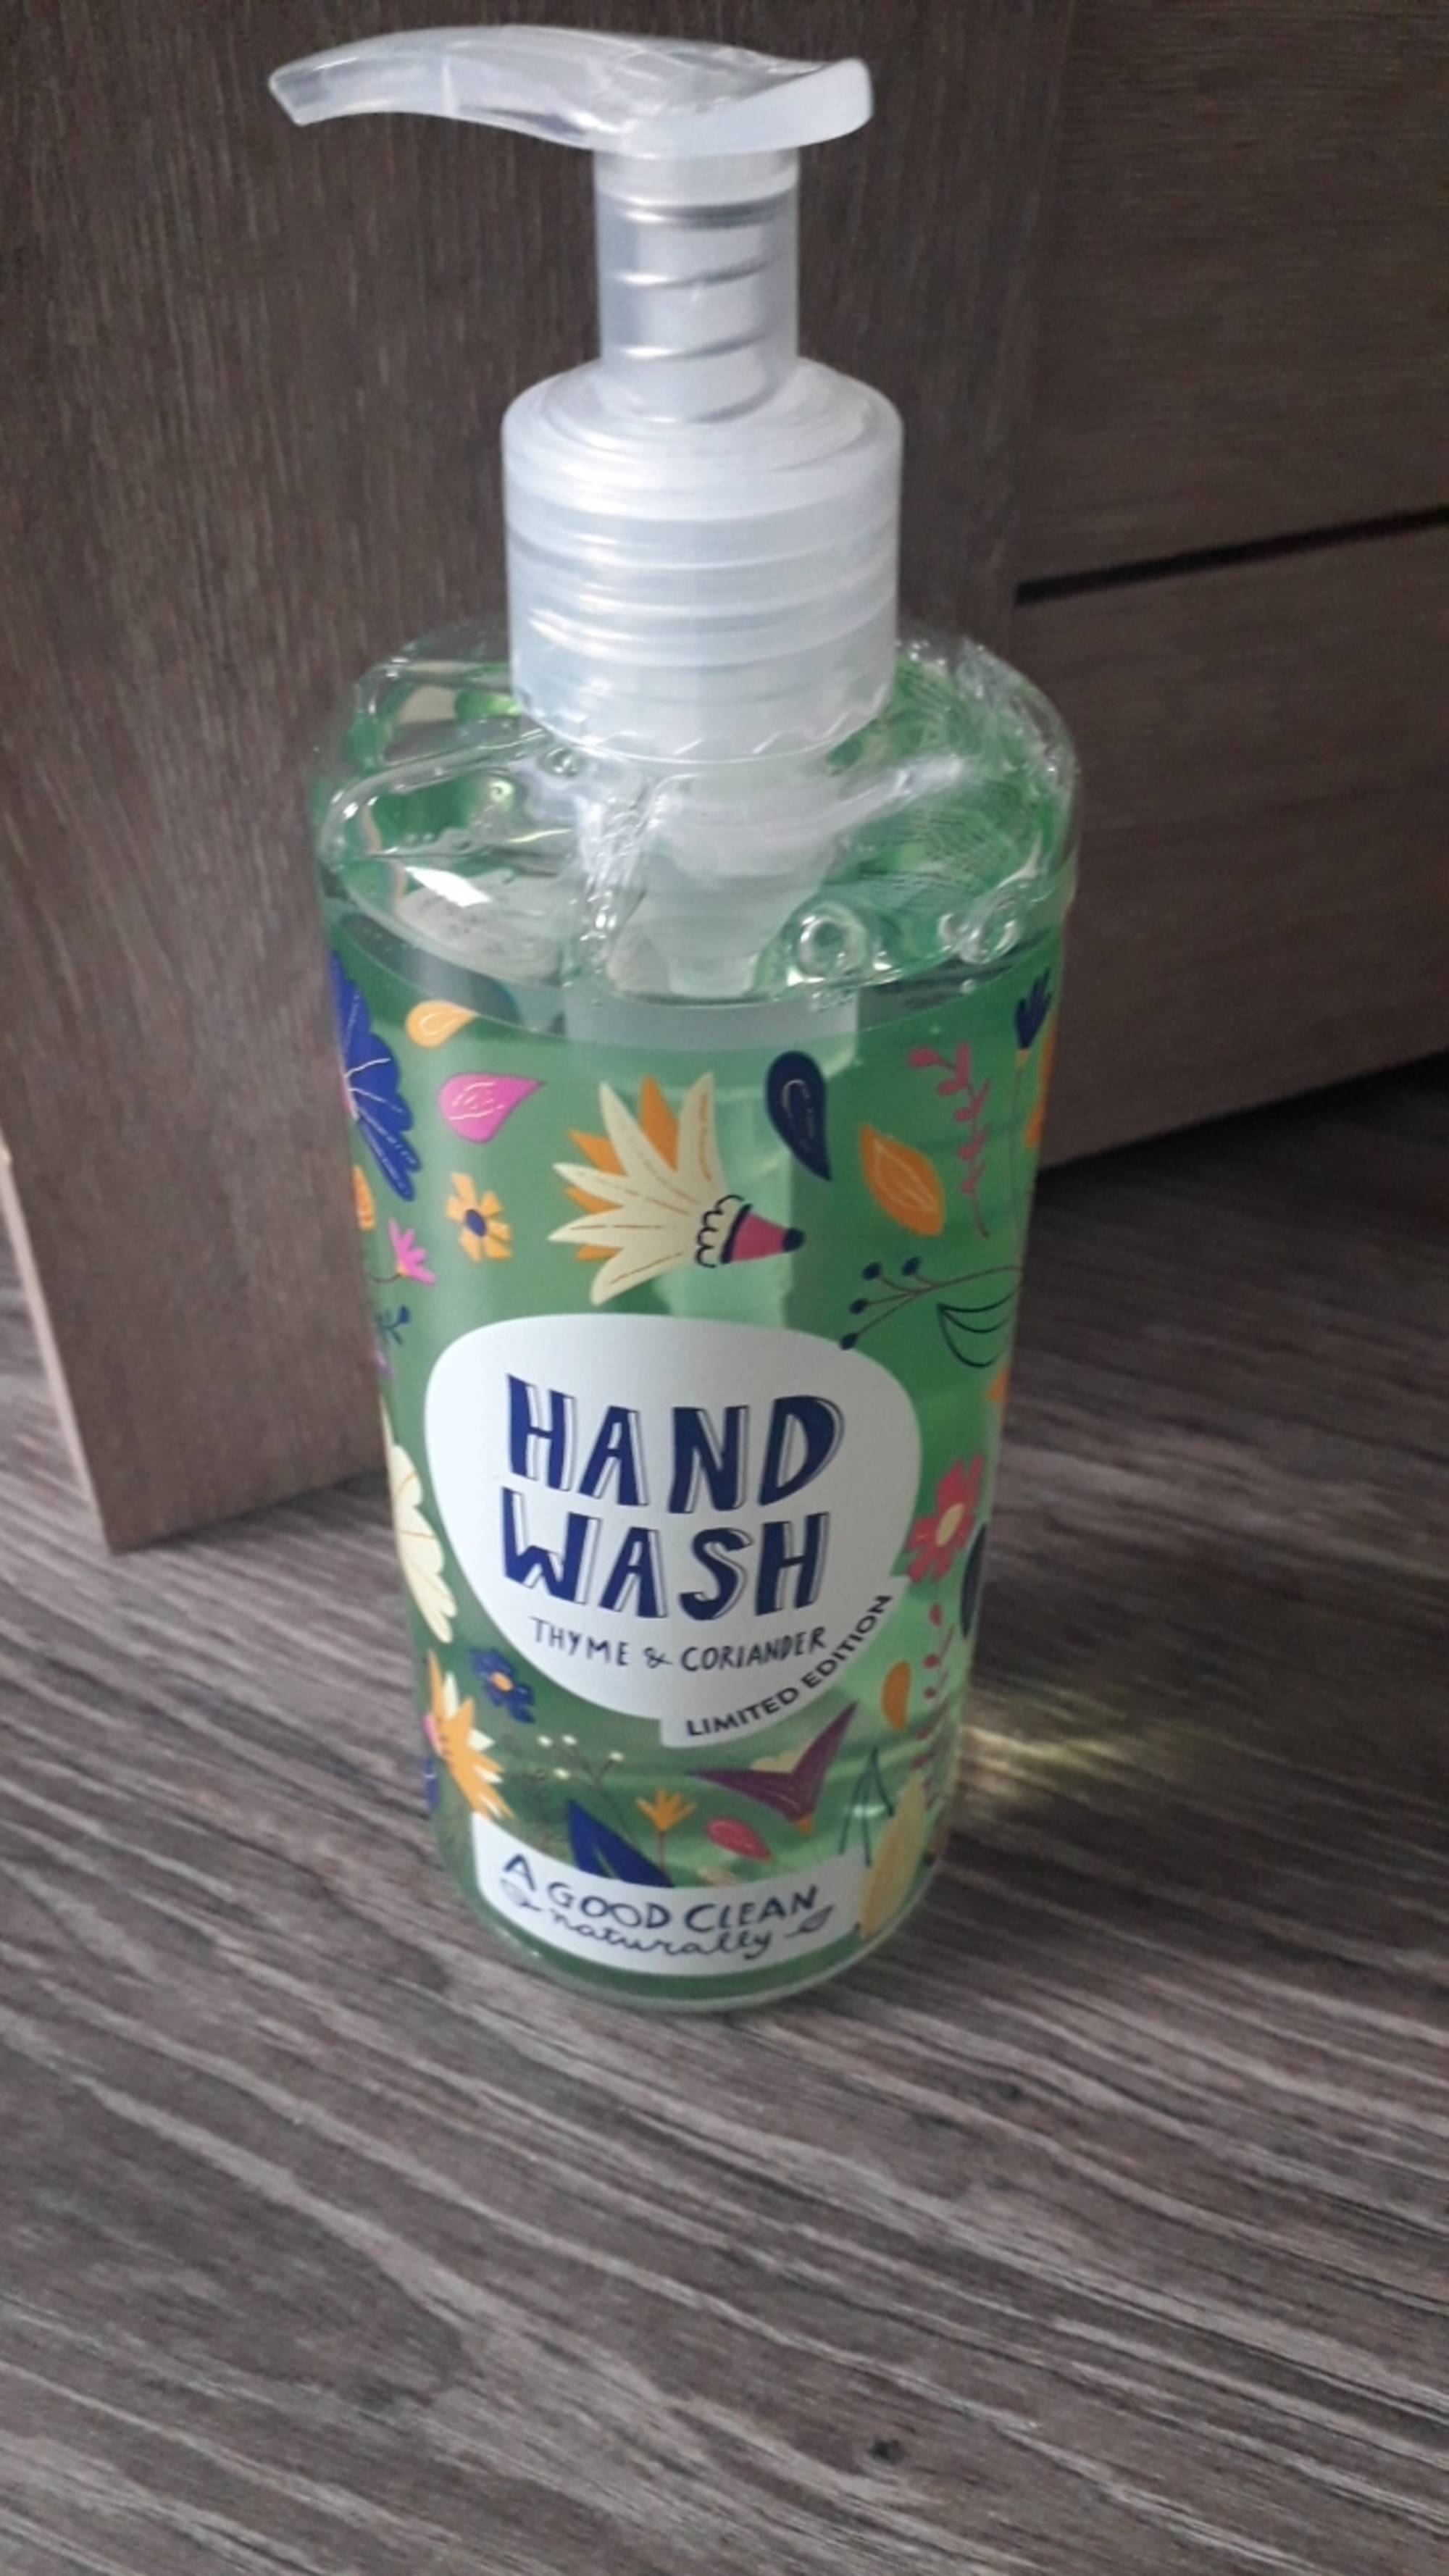 A GOOD CLEAN - Hand wash thyme & coriander